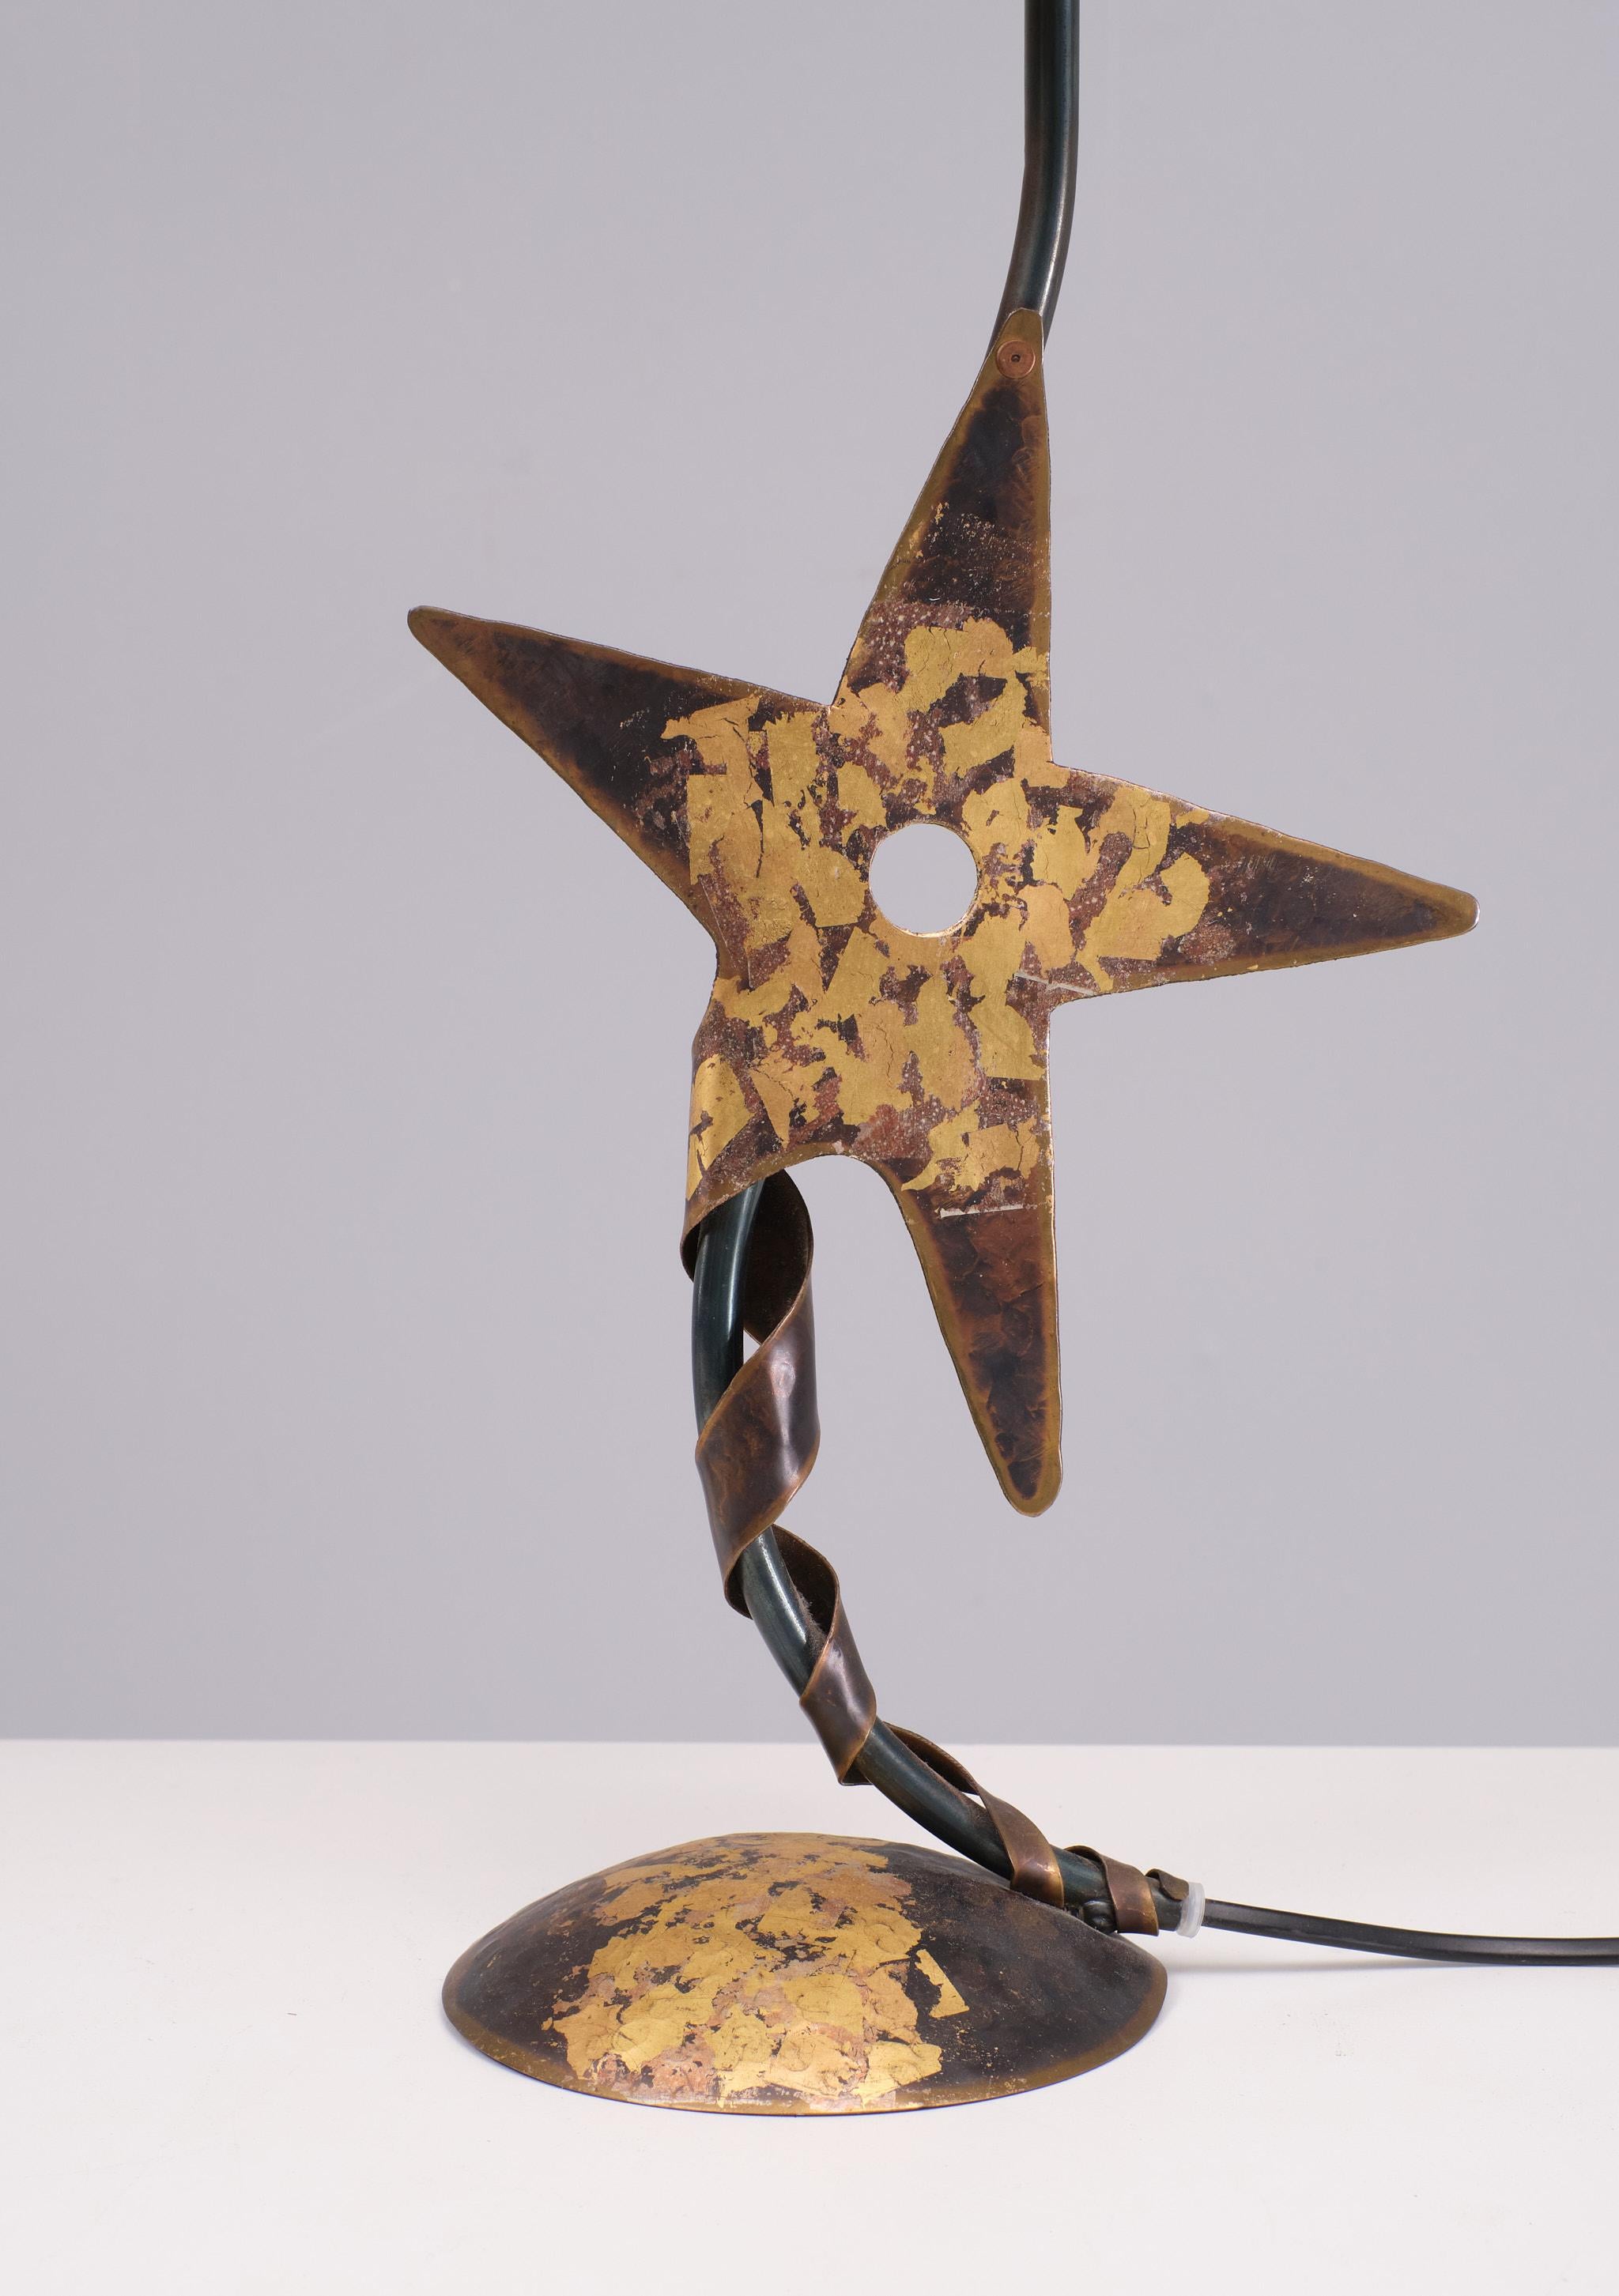 Einzigartig  Handgefertigte Kupfer-Tischlampe . Entwurf von Robert Kostka 1980er Jahre 
Frankreich, sternförmig, einer der Punten ist um die Basis herum gerafft. 
Einzigartiges Einzelstück, kommt mit seinem originalen Holzspan-Schirm. 
sehr guter